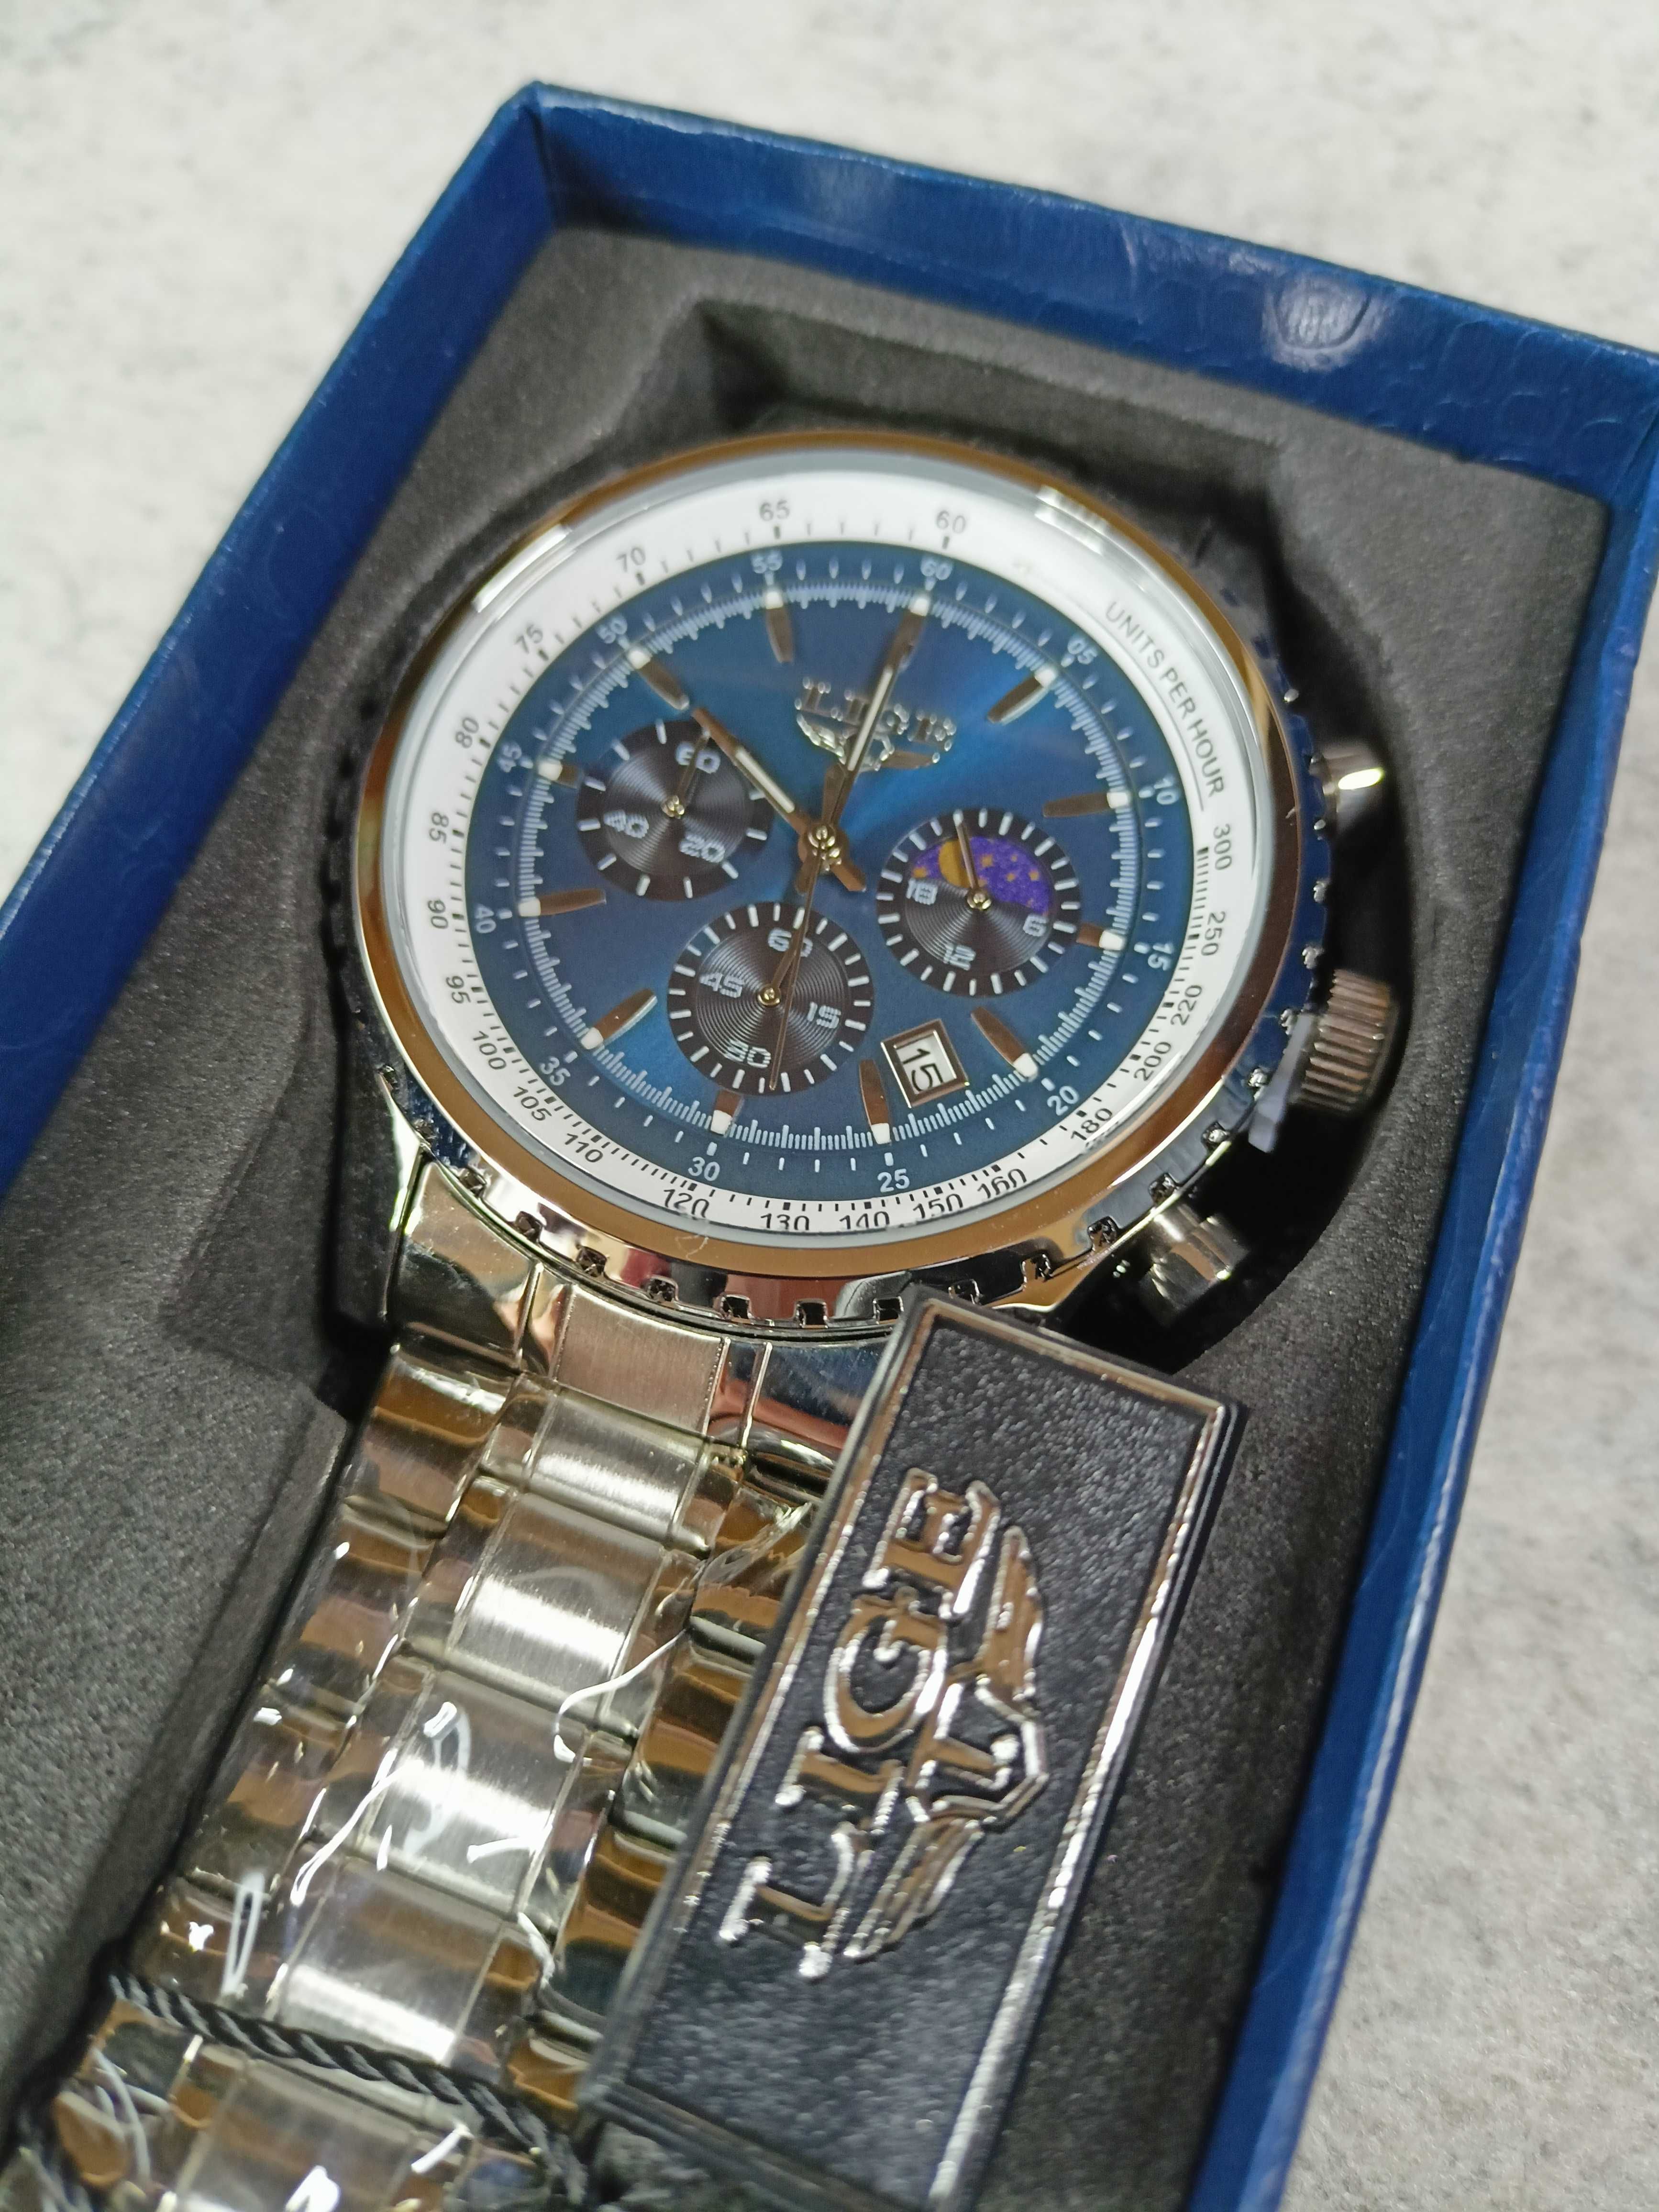 Piękny elegancki dobrze wykonany zegarek męski chronograf bransoleta.